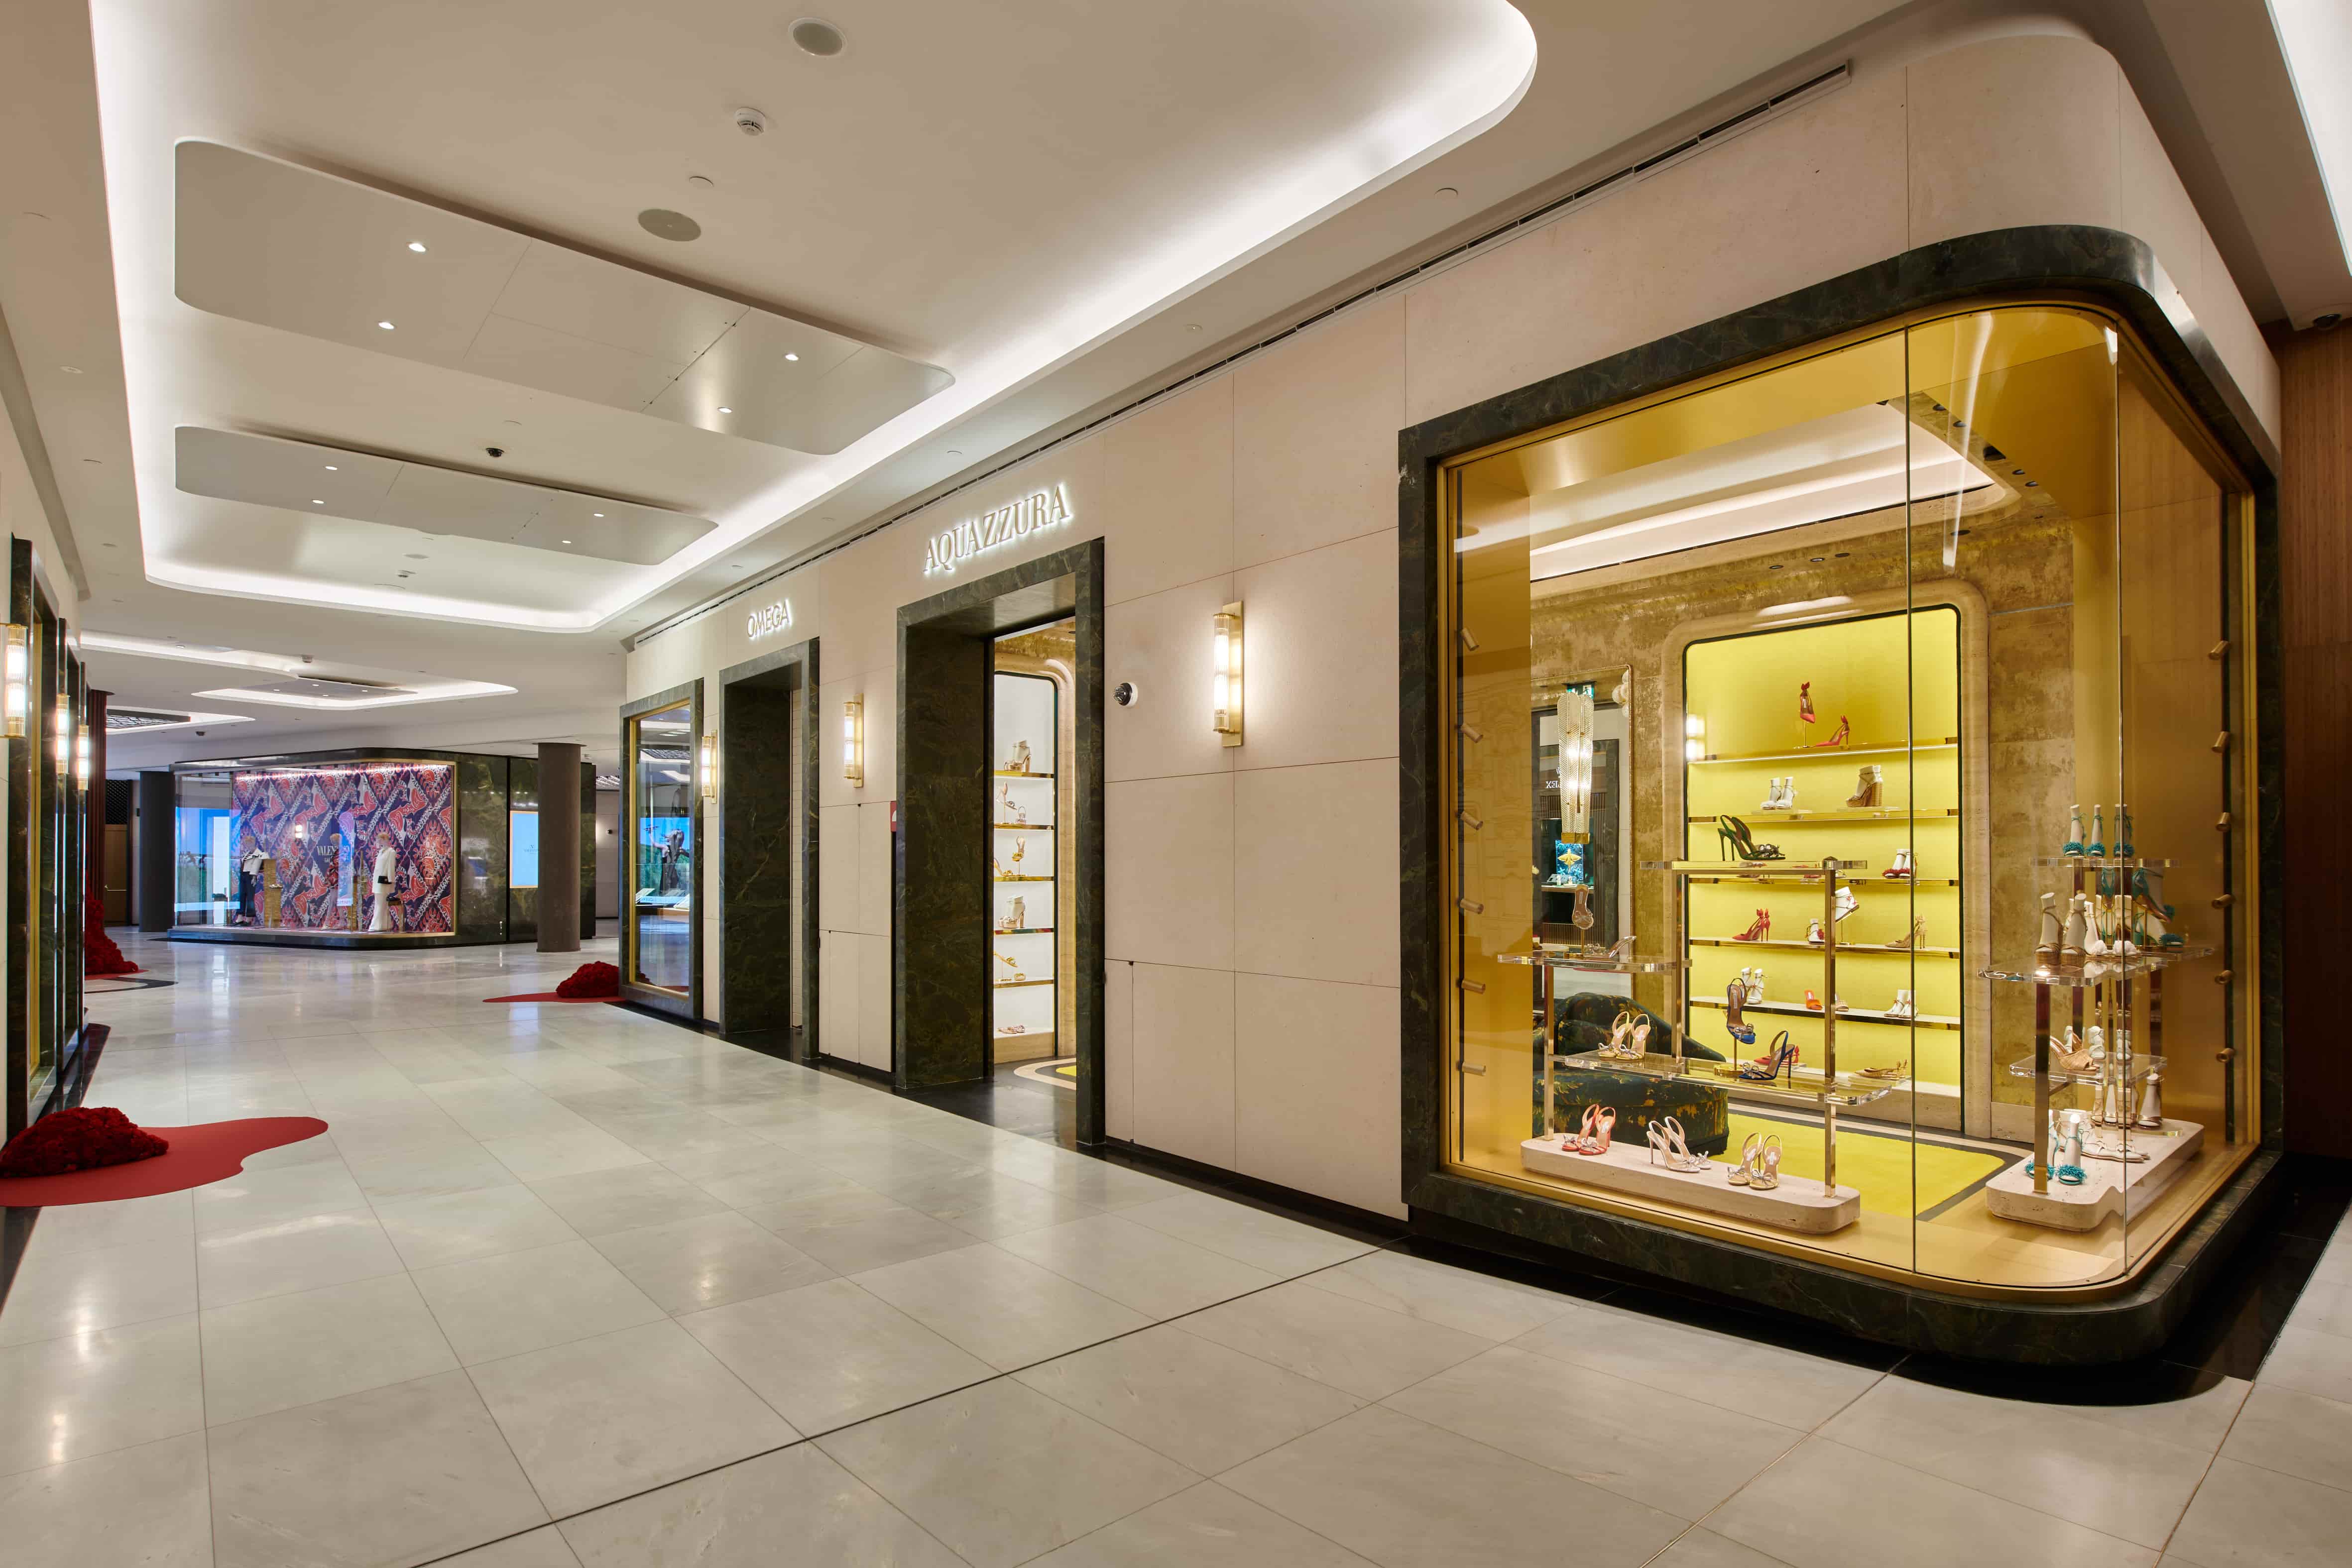 Galería Canalejas abre sus puertas y se consolida como icono del lujo con boutiques de Rolex, Zegna o Valentino